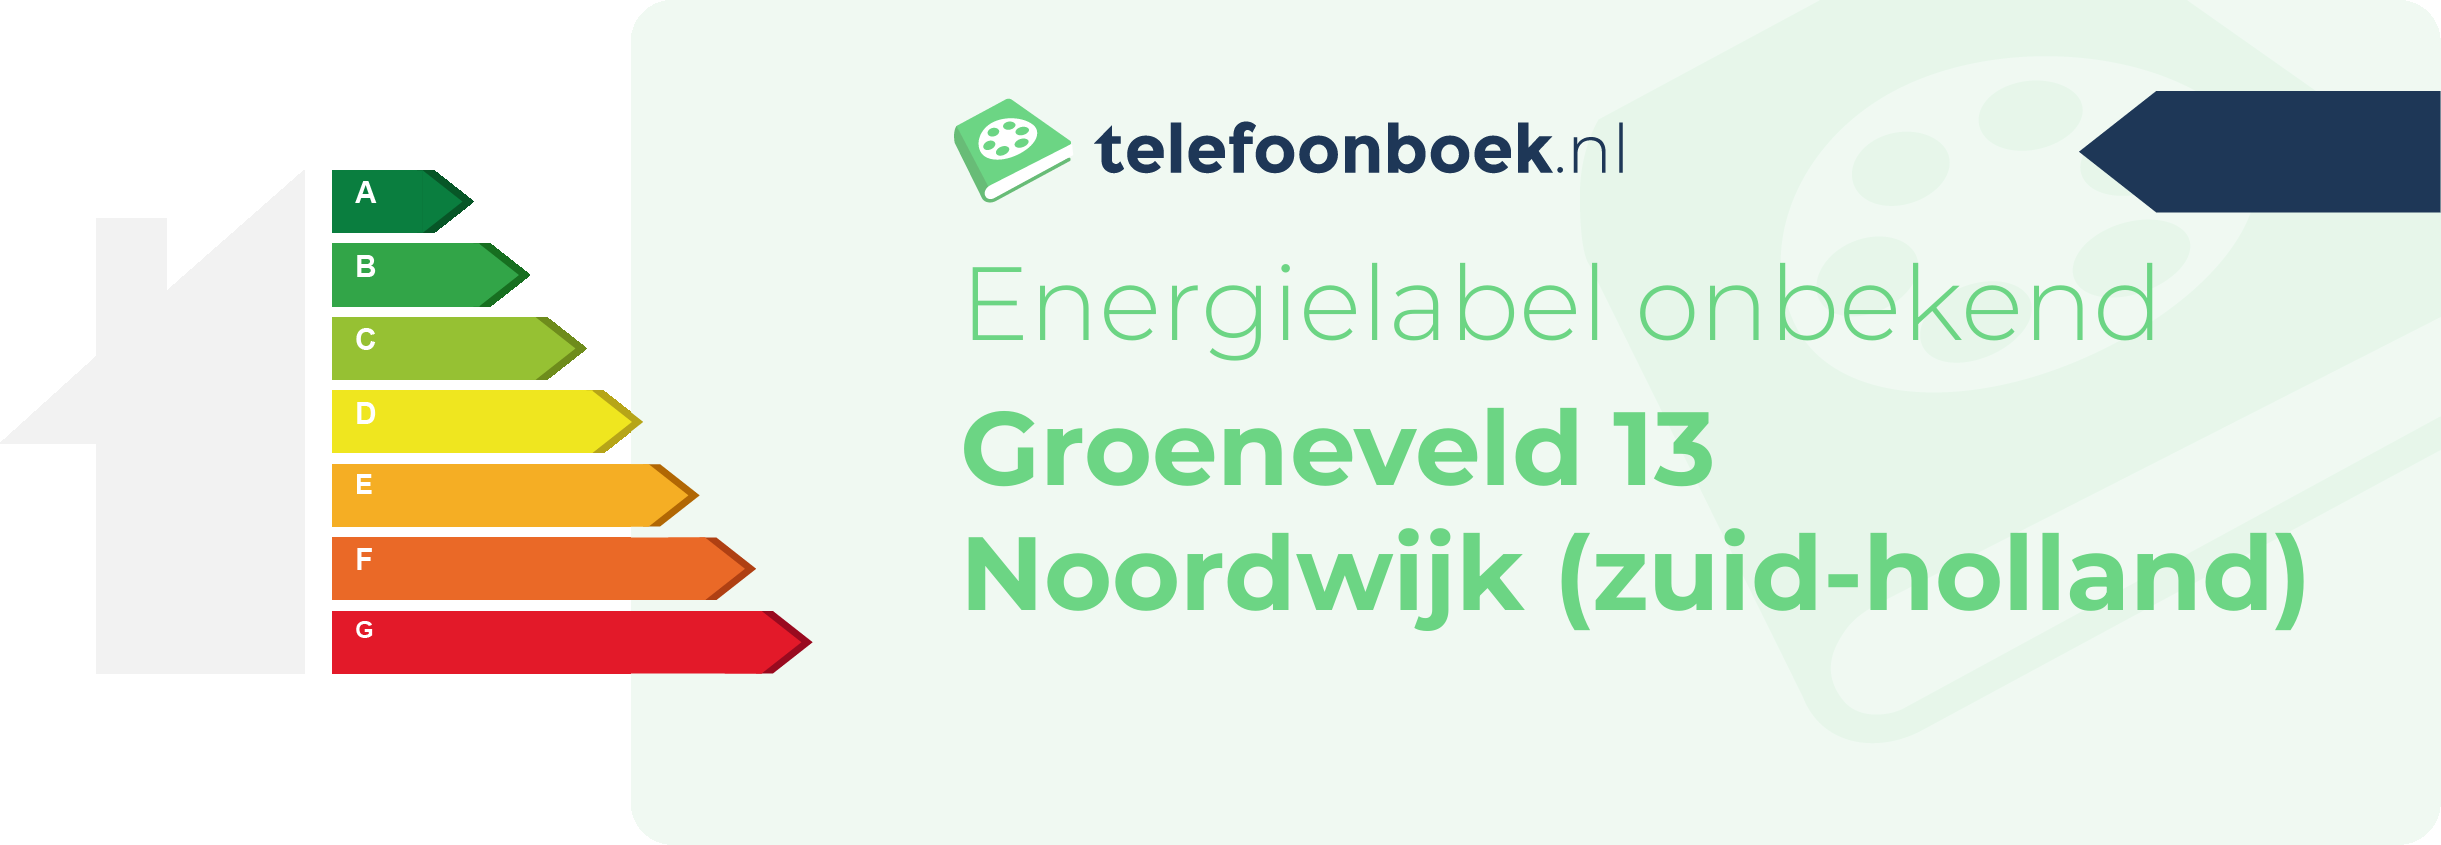 Energielabel Groeneveld 13 Noordwijk (Zuid-Holland)